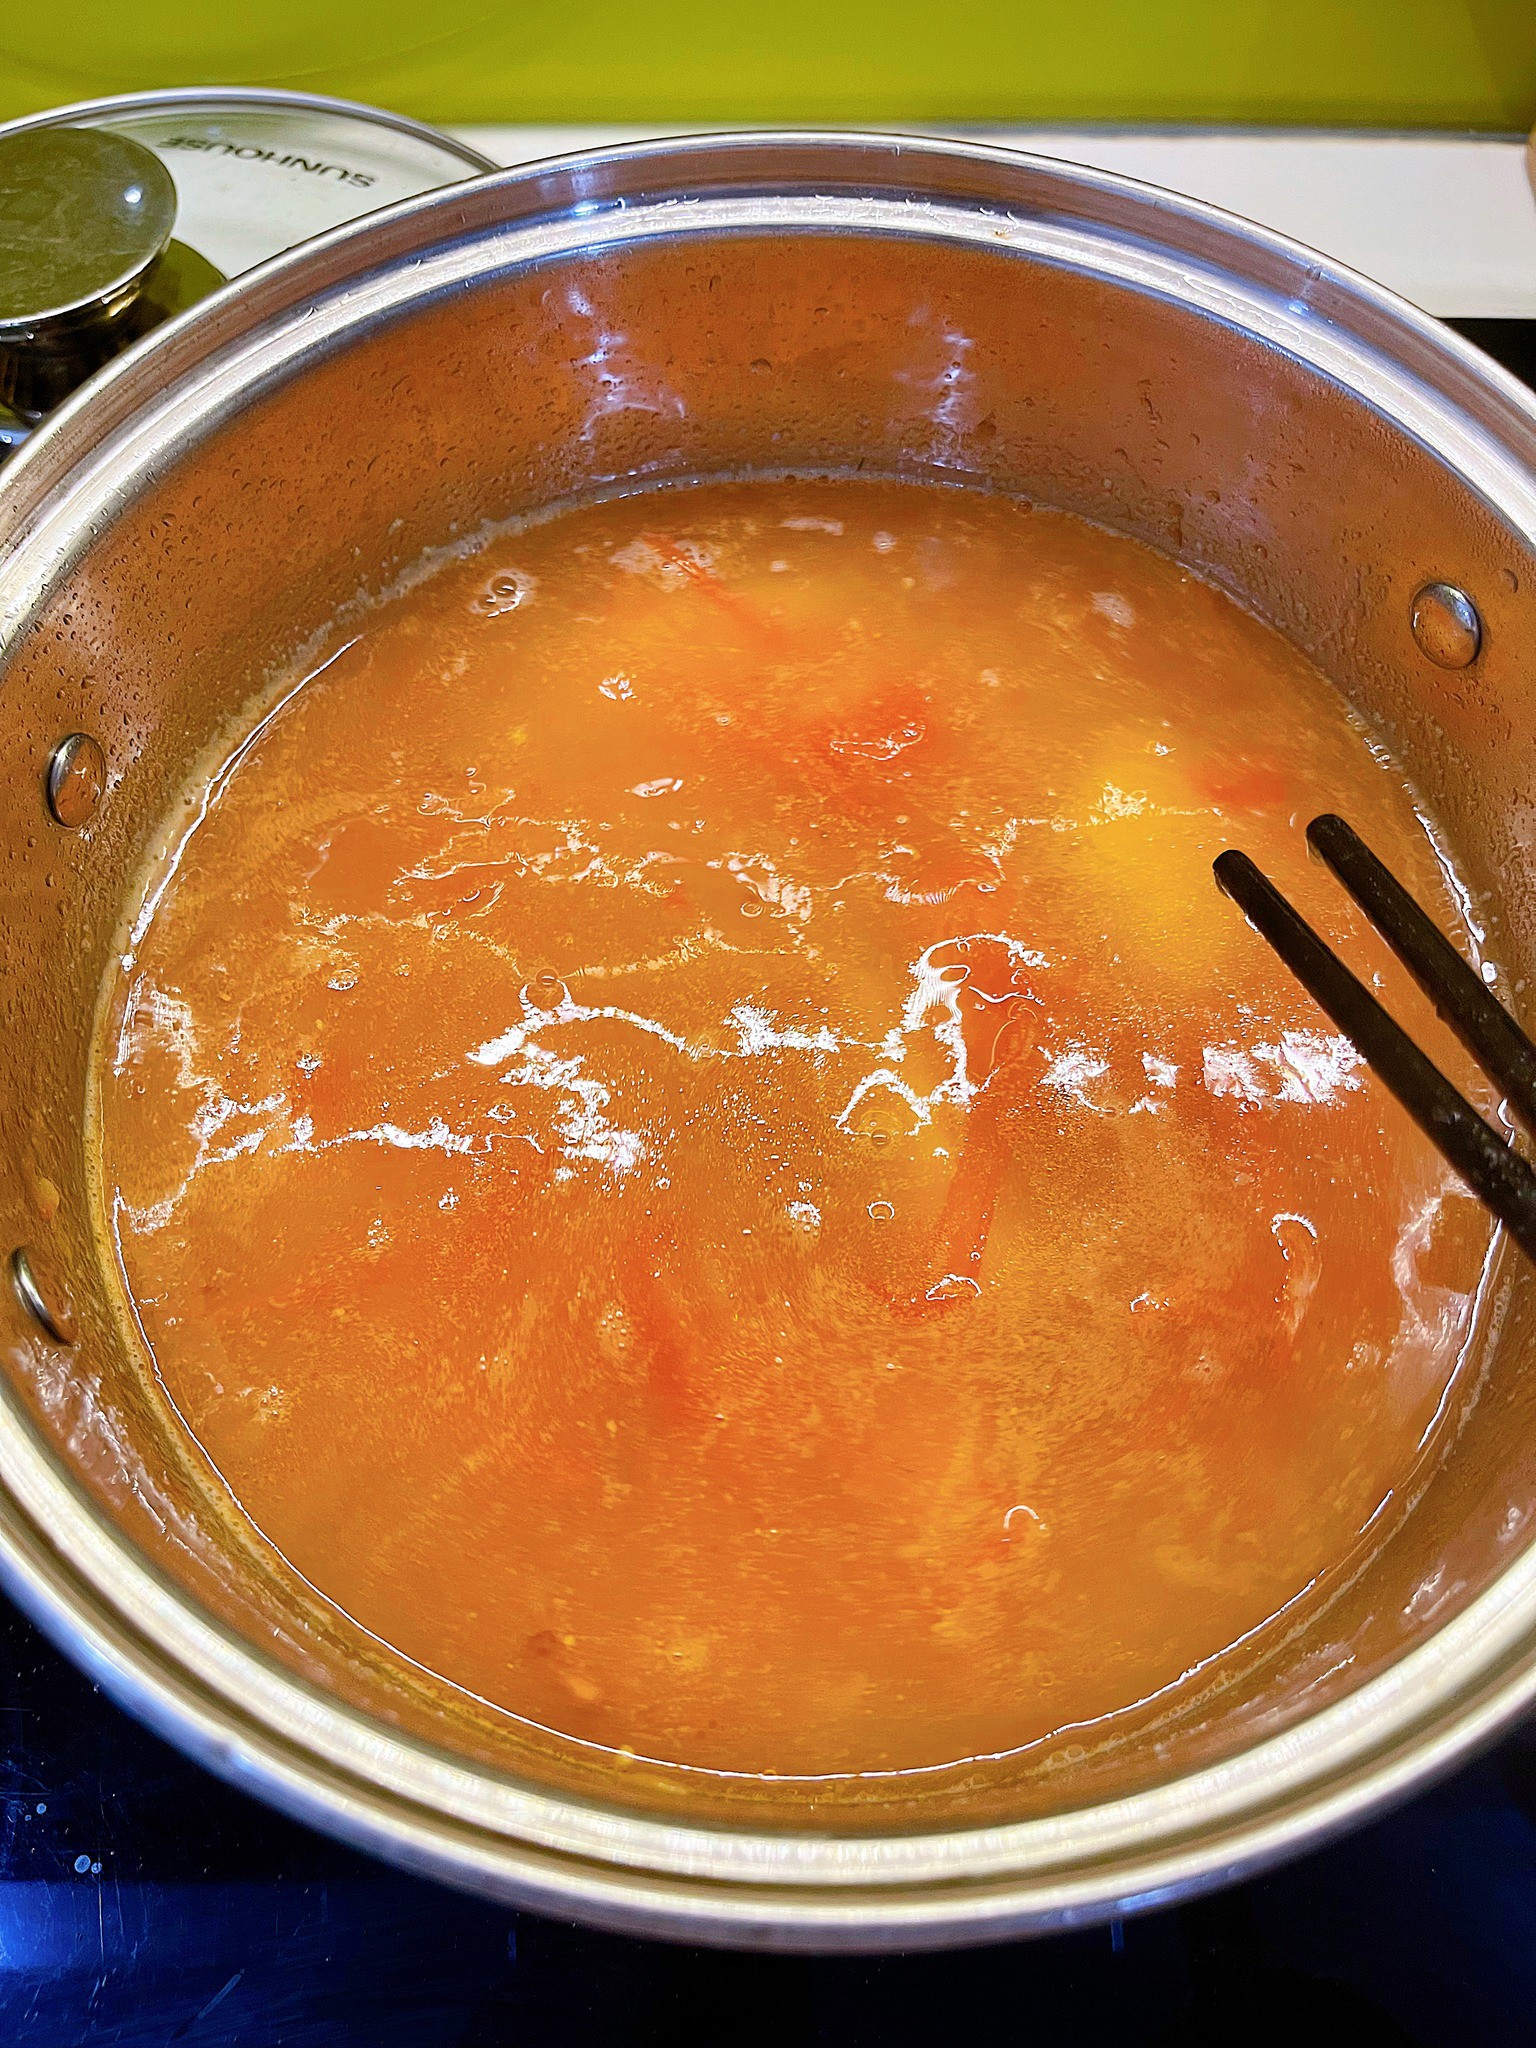 Sau đó cho nước vào đun sôi, nêm nếm một chút muối cho vừa vị. Gia đình nào thích ăn chua, có thể nêm một chút&nbsp;nước mẻ chua đã lọc, canh sẽ thơm hơn và đậm vị hơn.